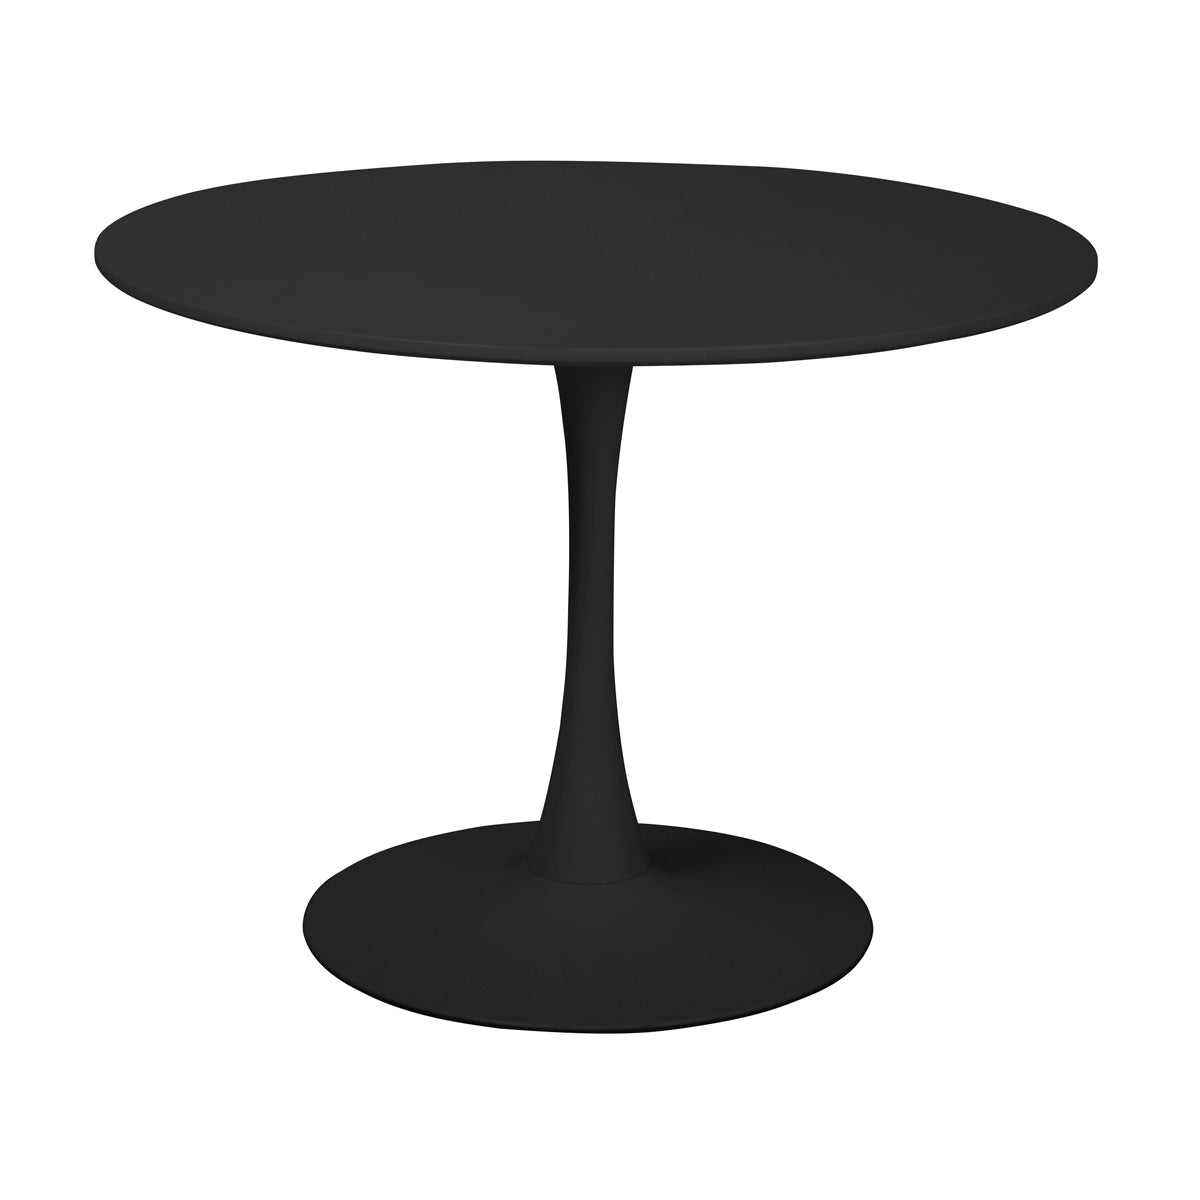 Table à manger ronde pour 4 à 5 personnes diamètre 100 cm, finition laquée mate noire, base ronde en métal avec revêtement en epoxy noir - TULIPS